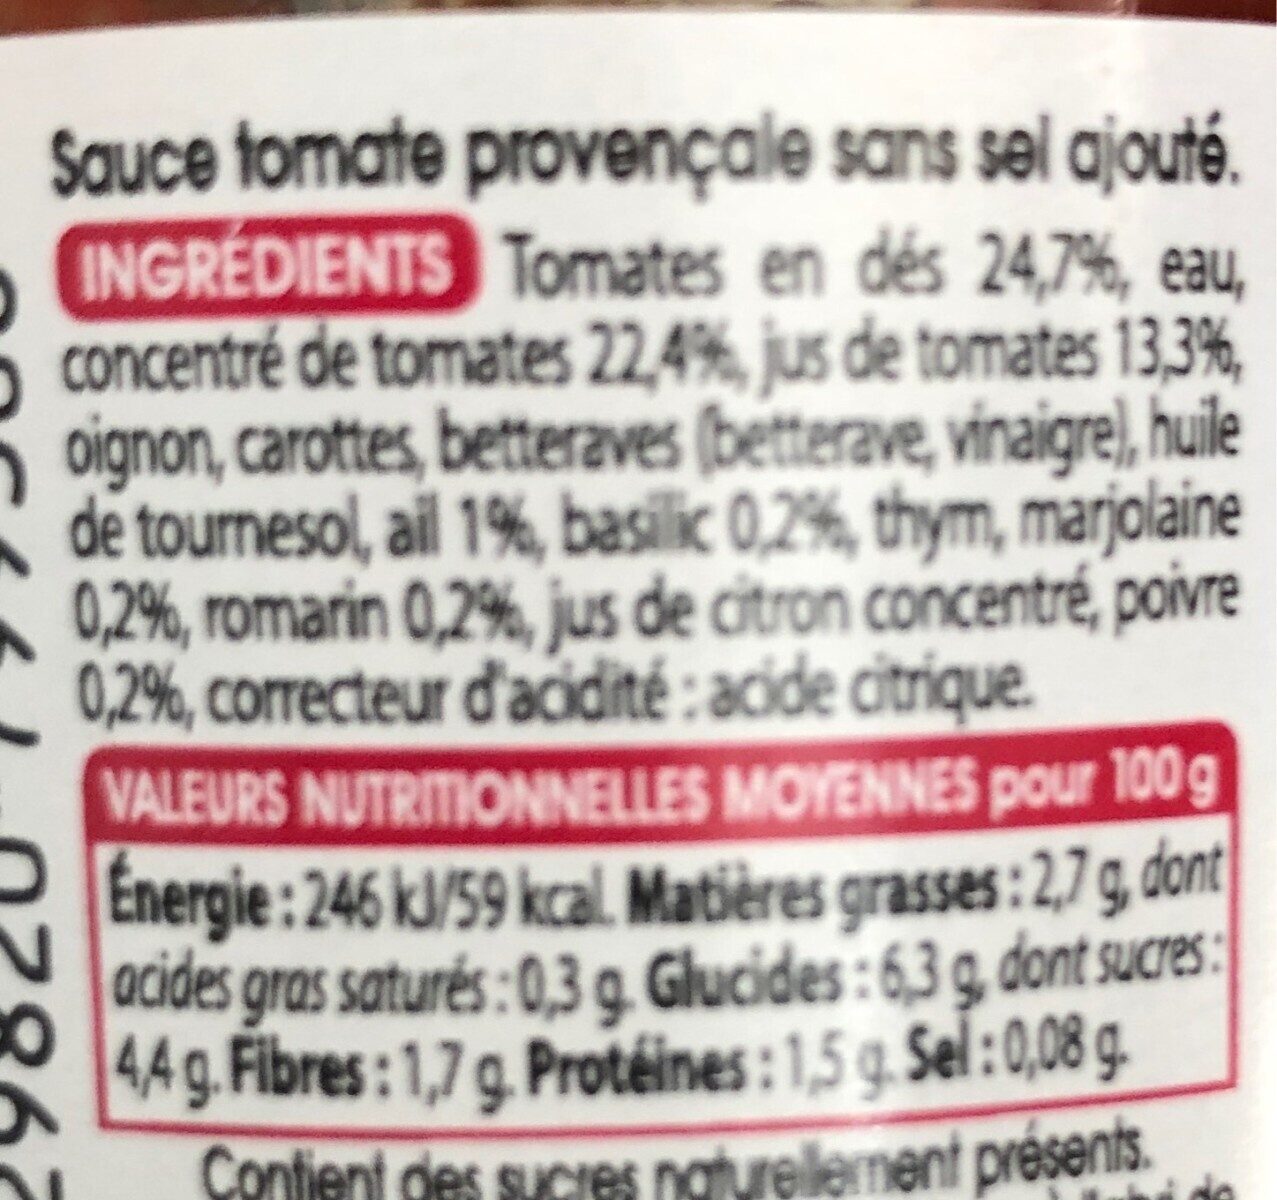 Sauce provençale - Nutrition facts - fr